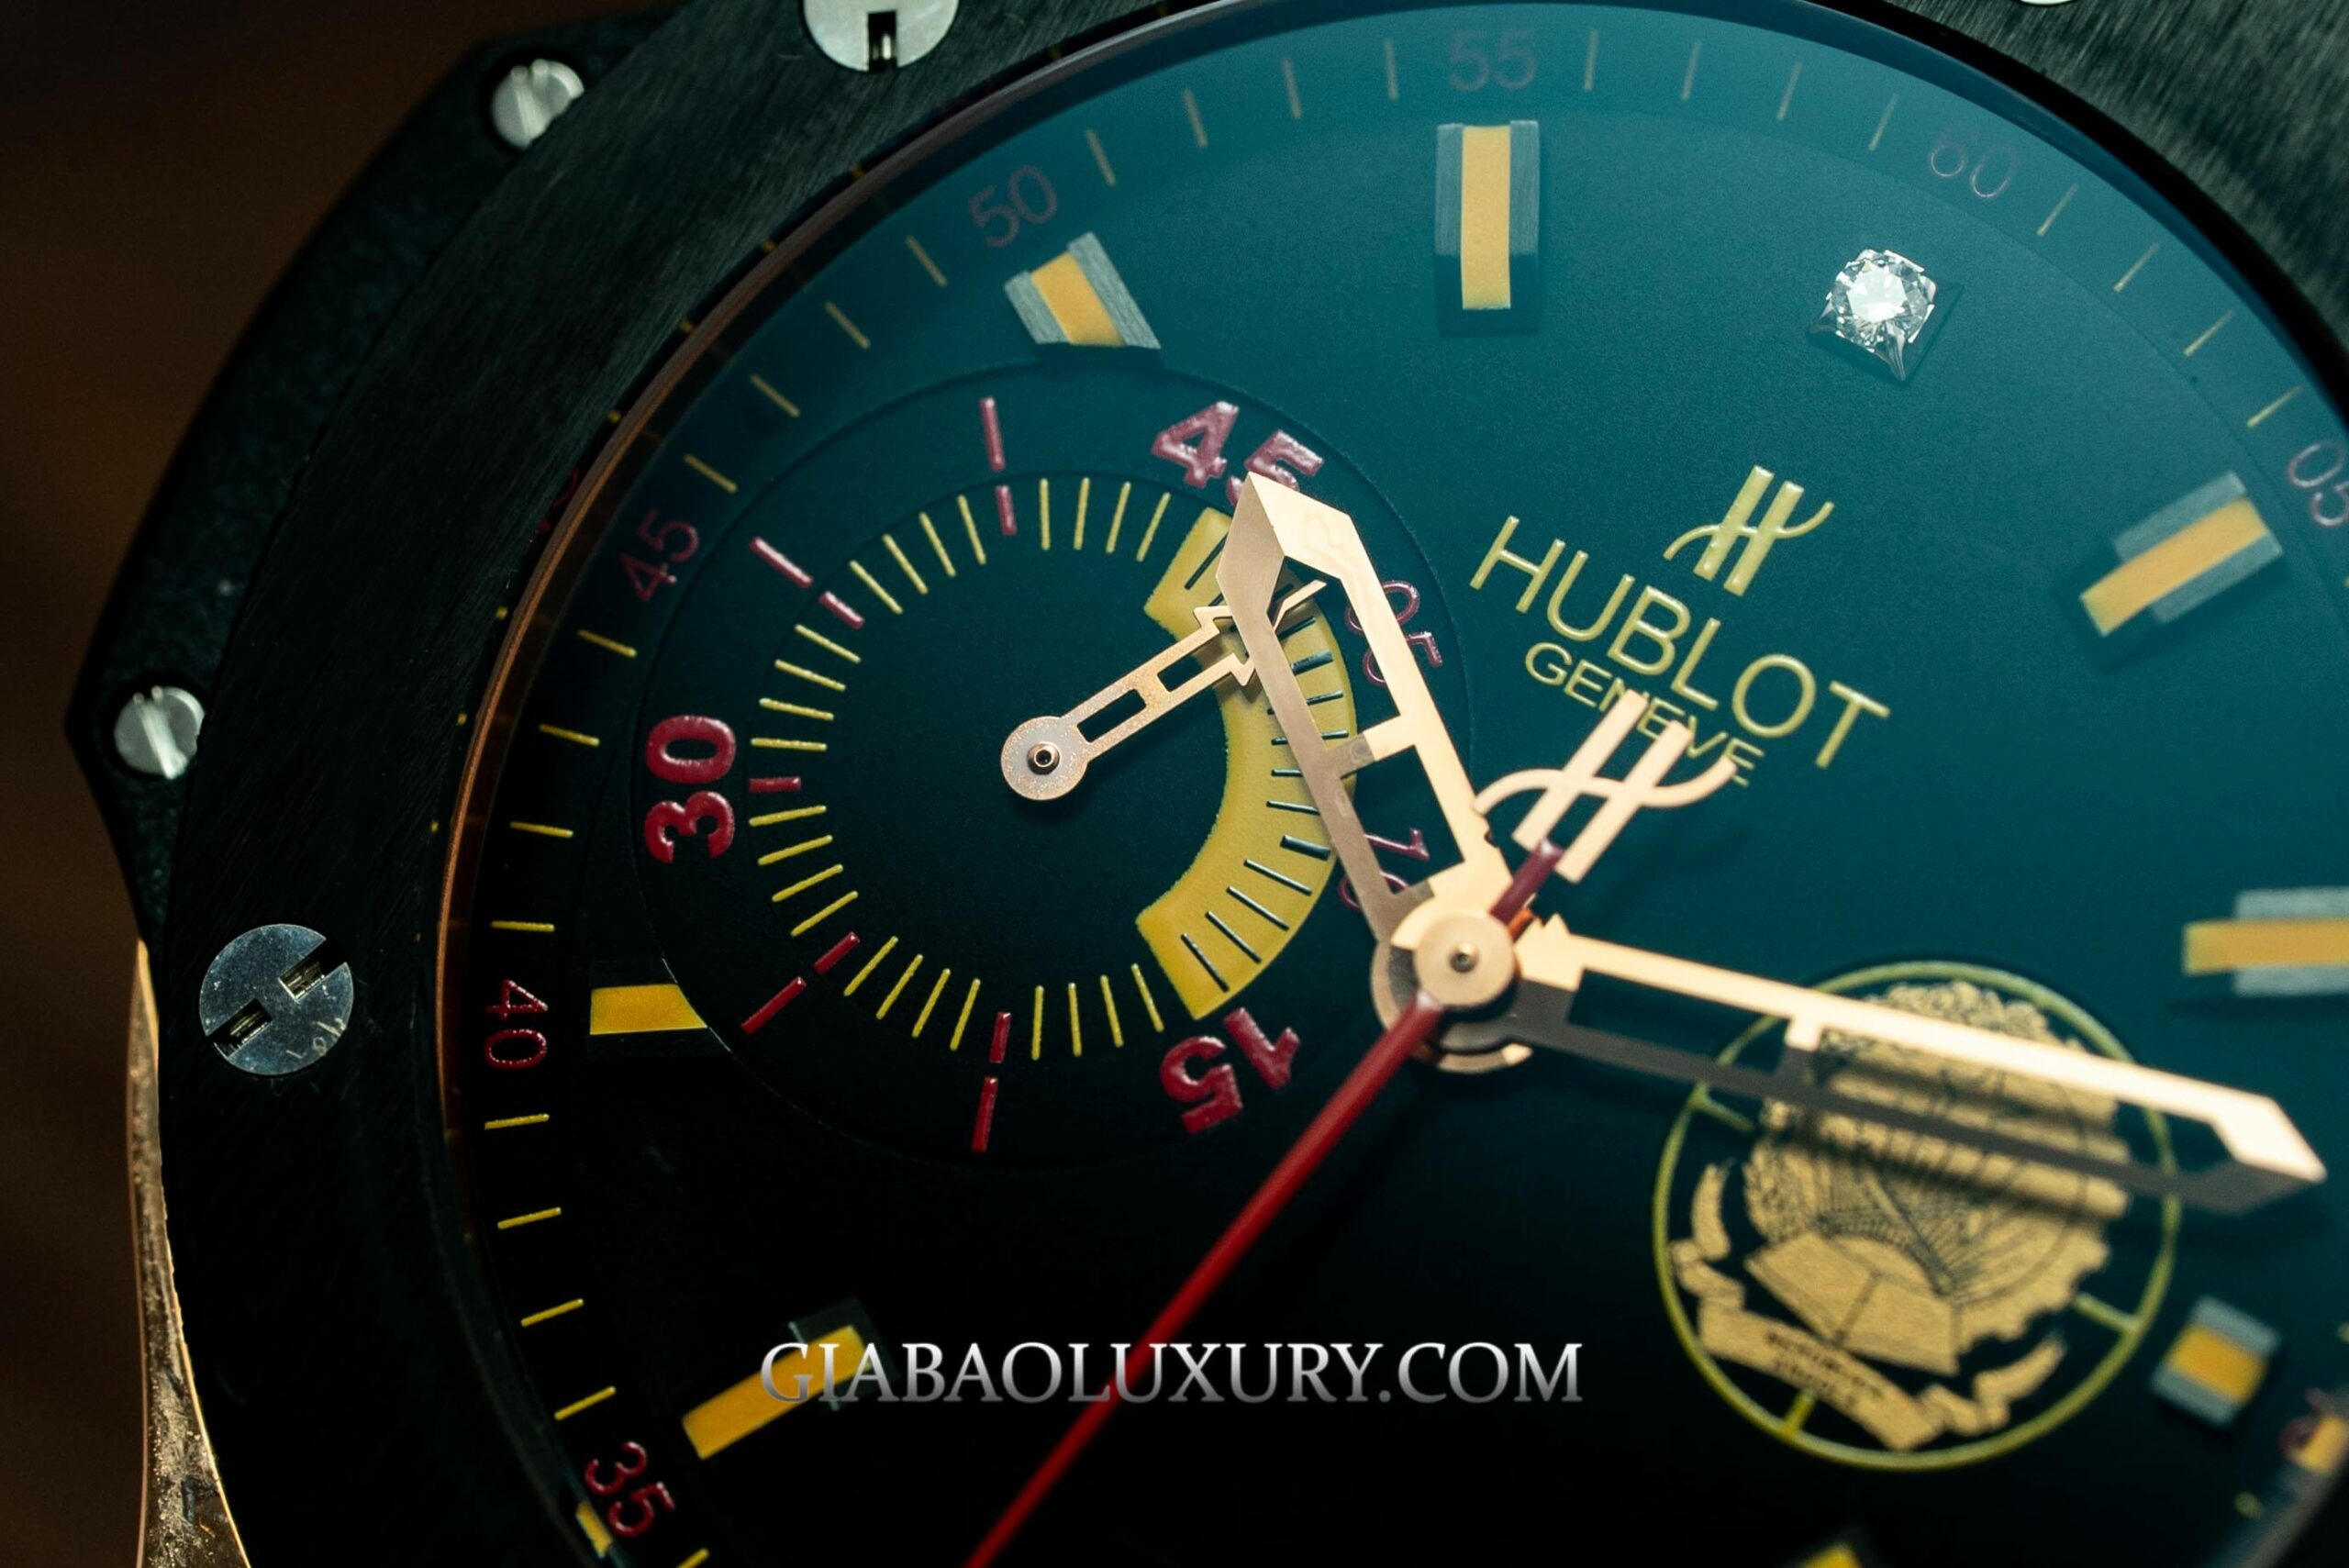 Đồng hồ Hublot Big Bang Angola Gold